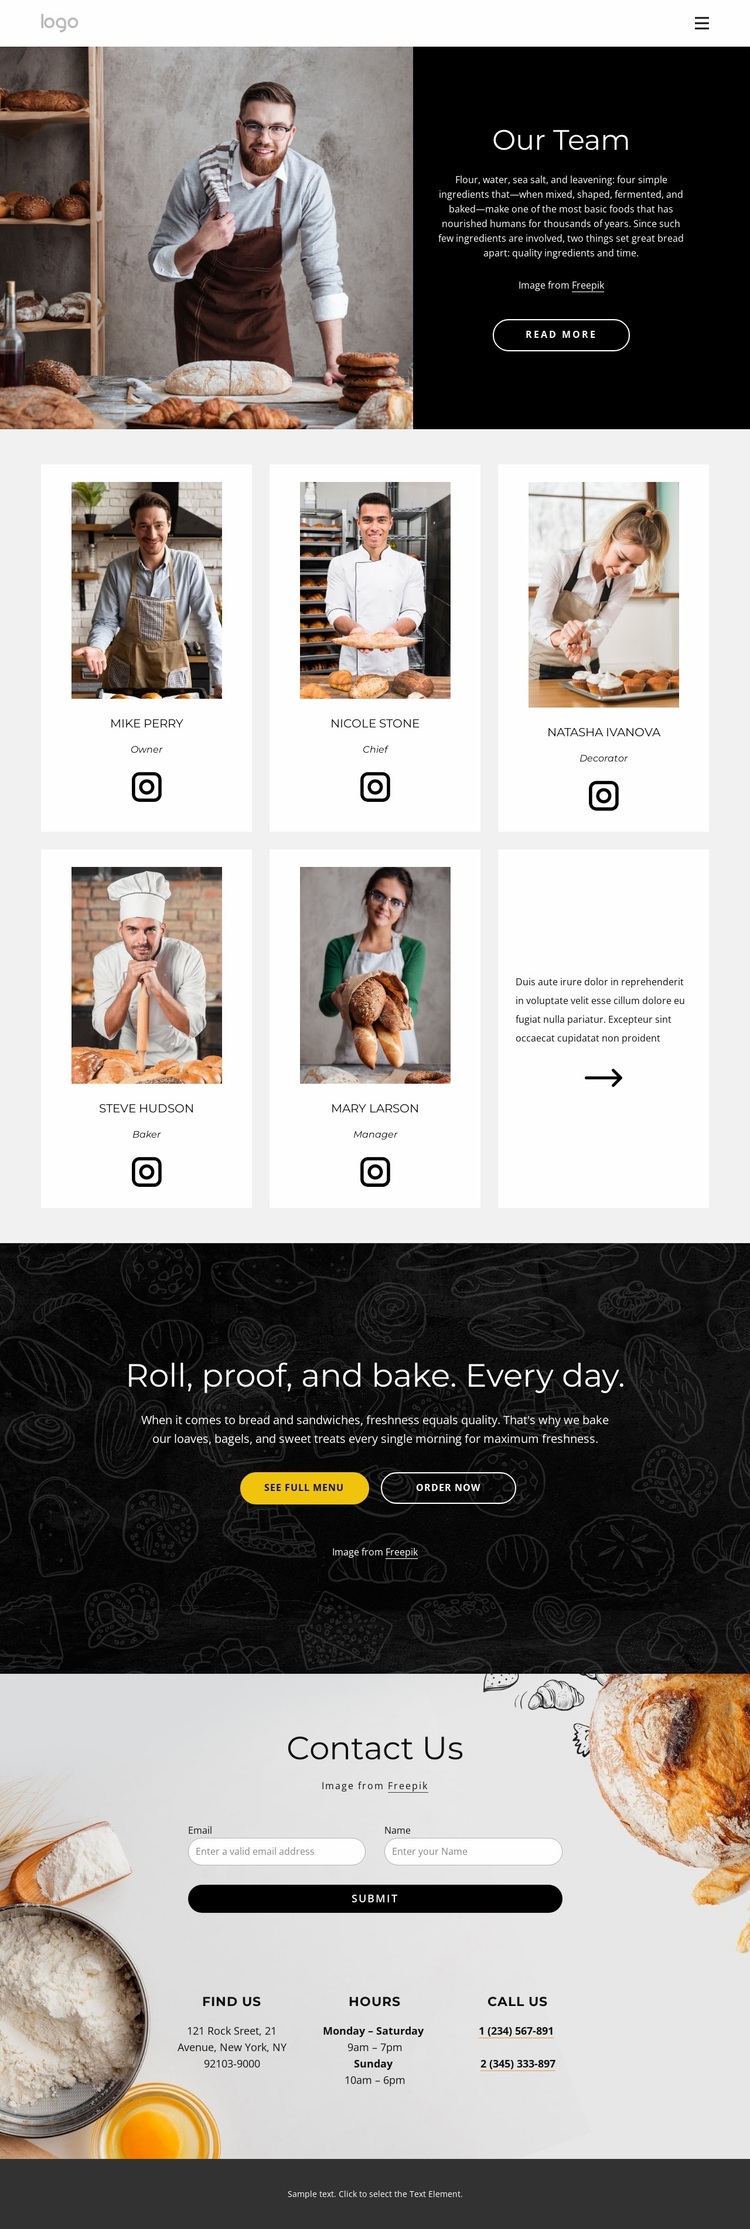 Bread bakers Website Design